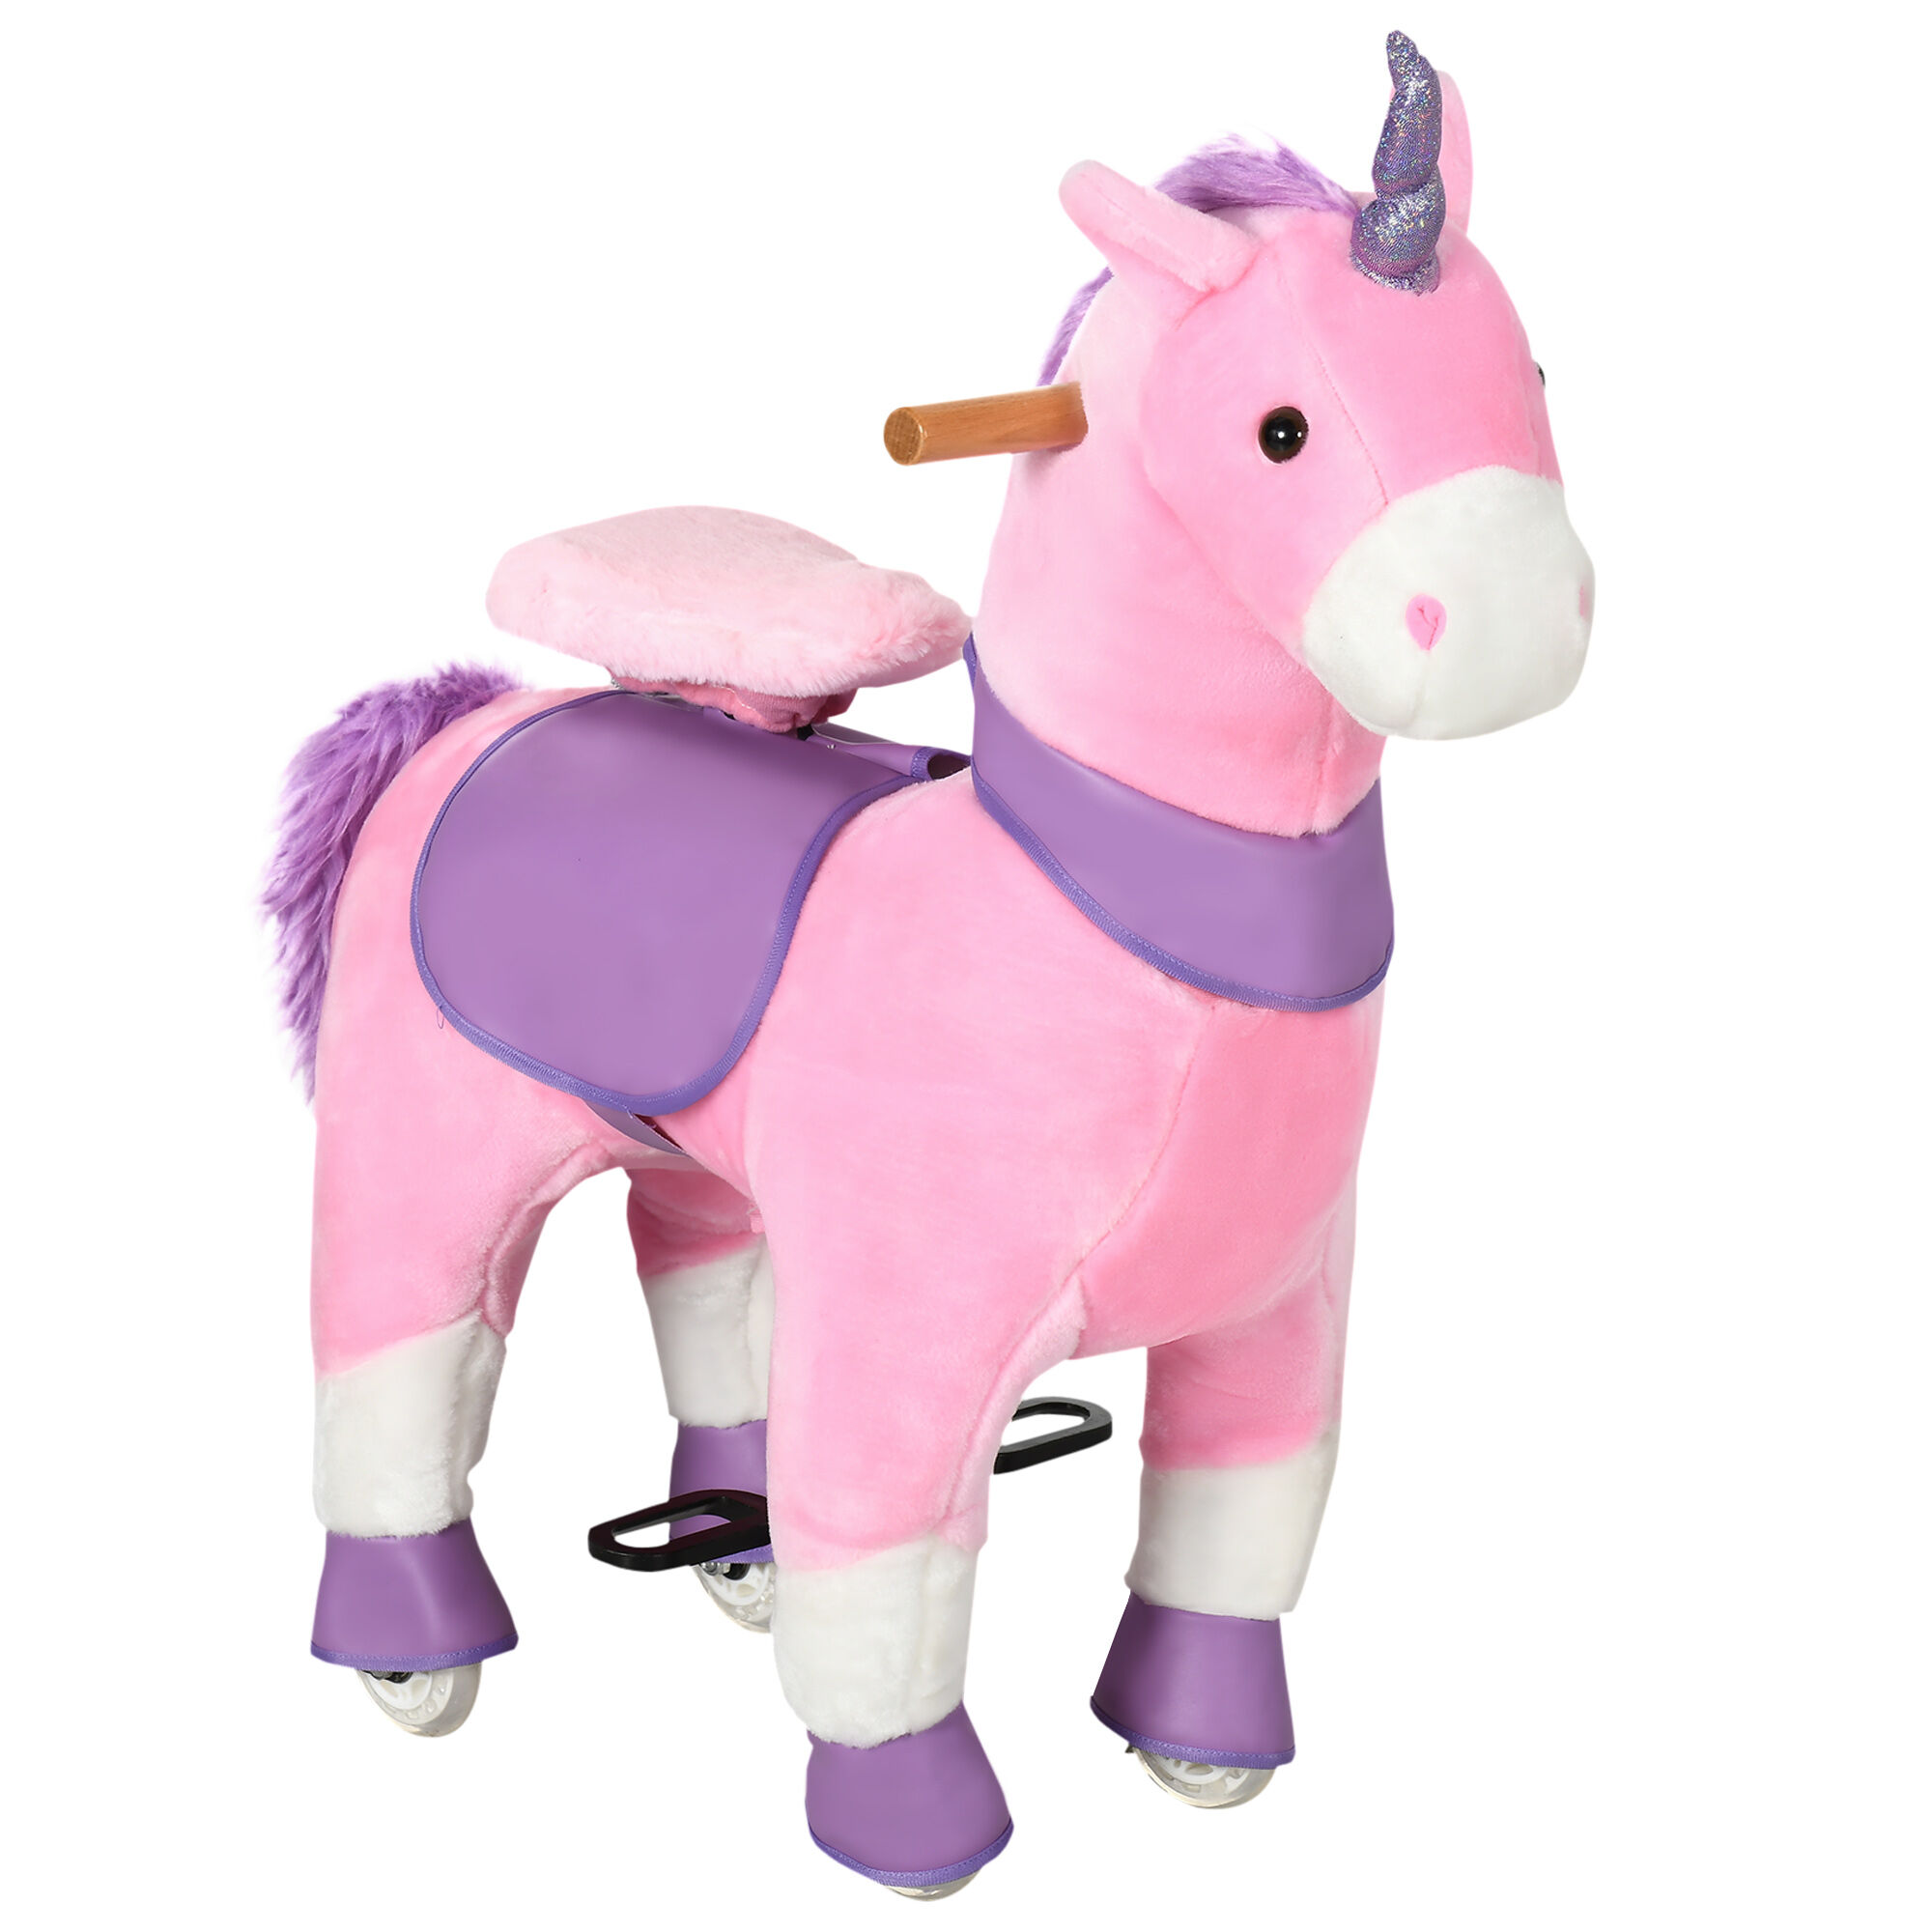 Homcom Cavallo a Dondolo con Ruote a Forma di Unicorno per Bambini da 3-6 Anni, 70x32x87cm, Rosa